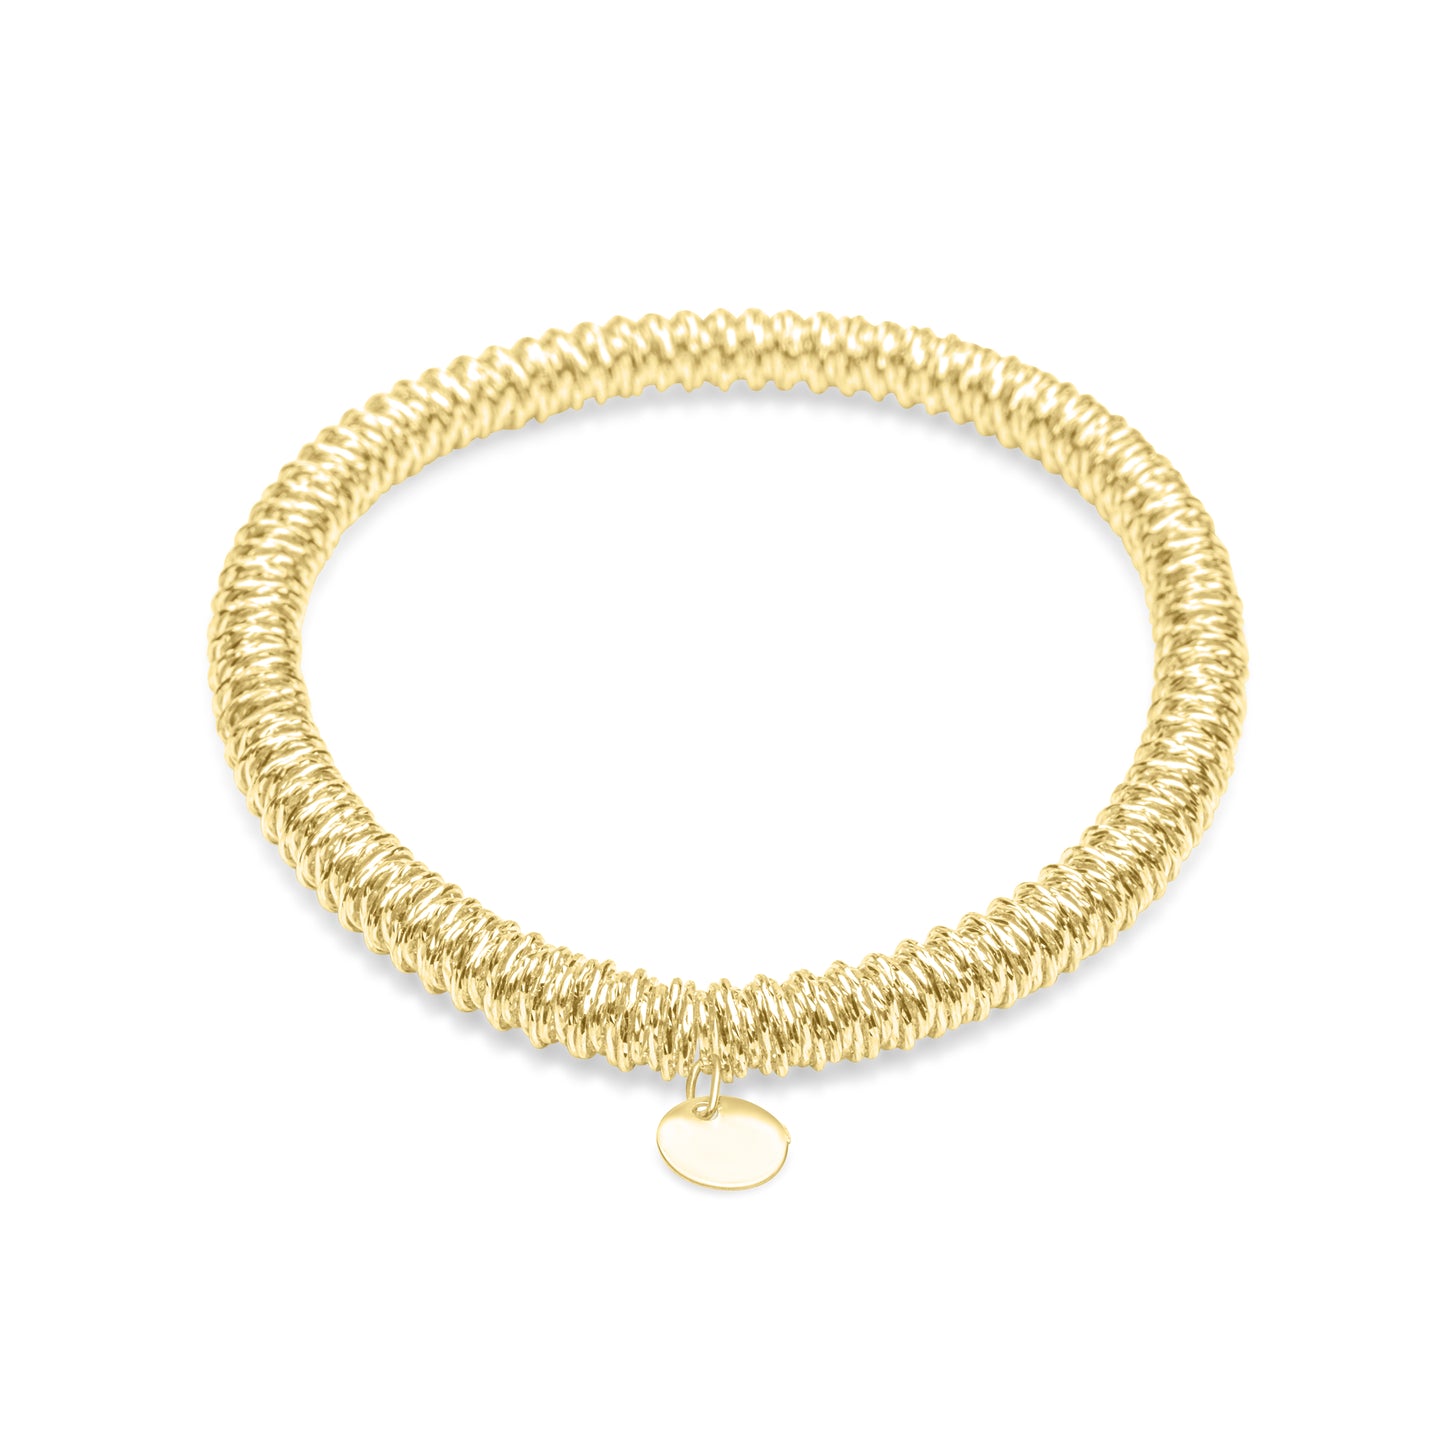 Spring Bracelet - Gold Plated